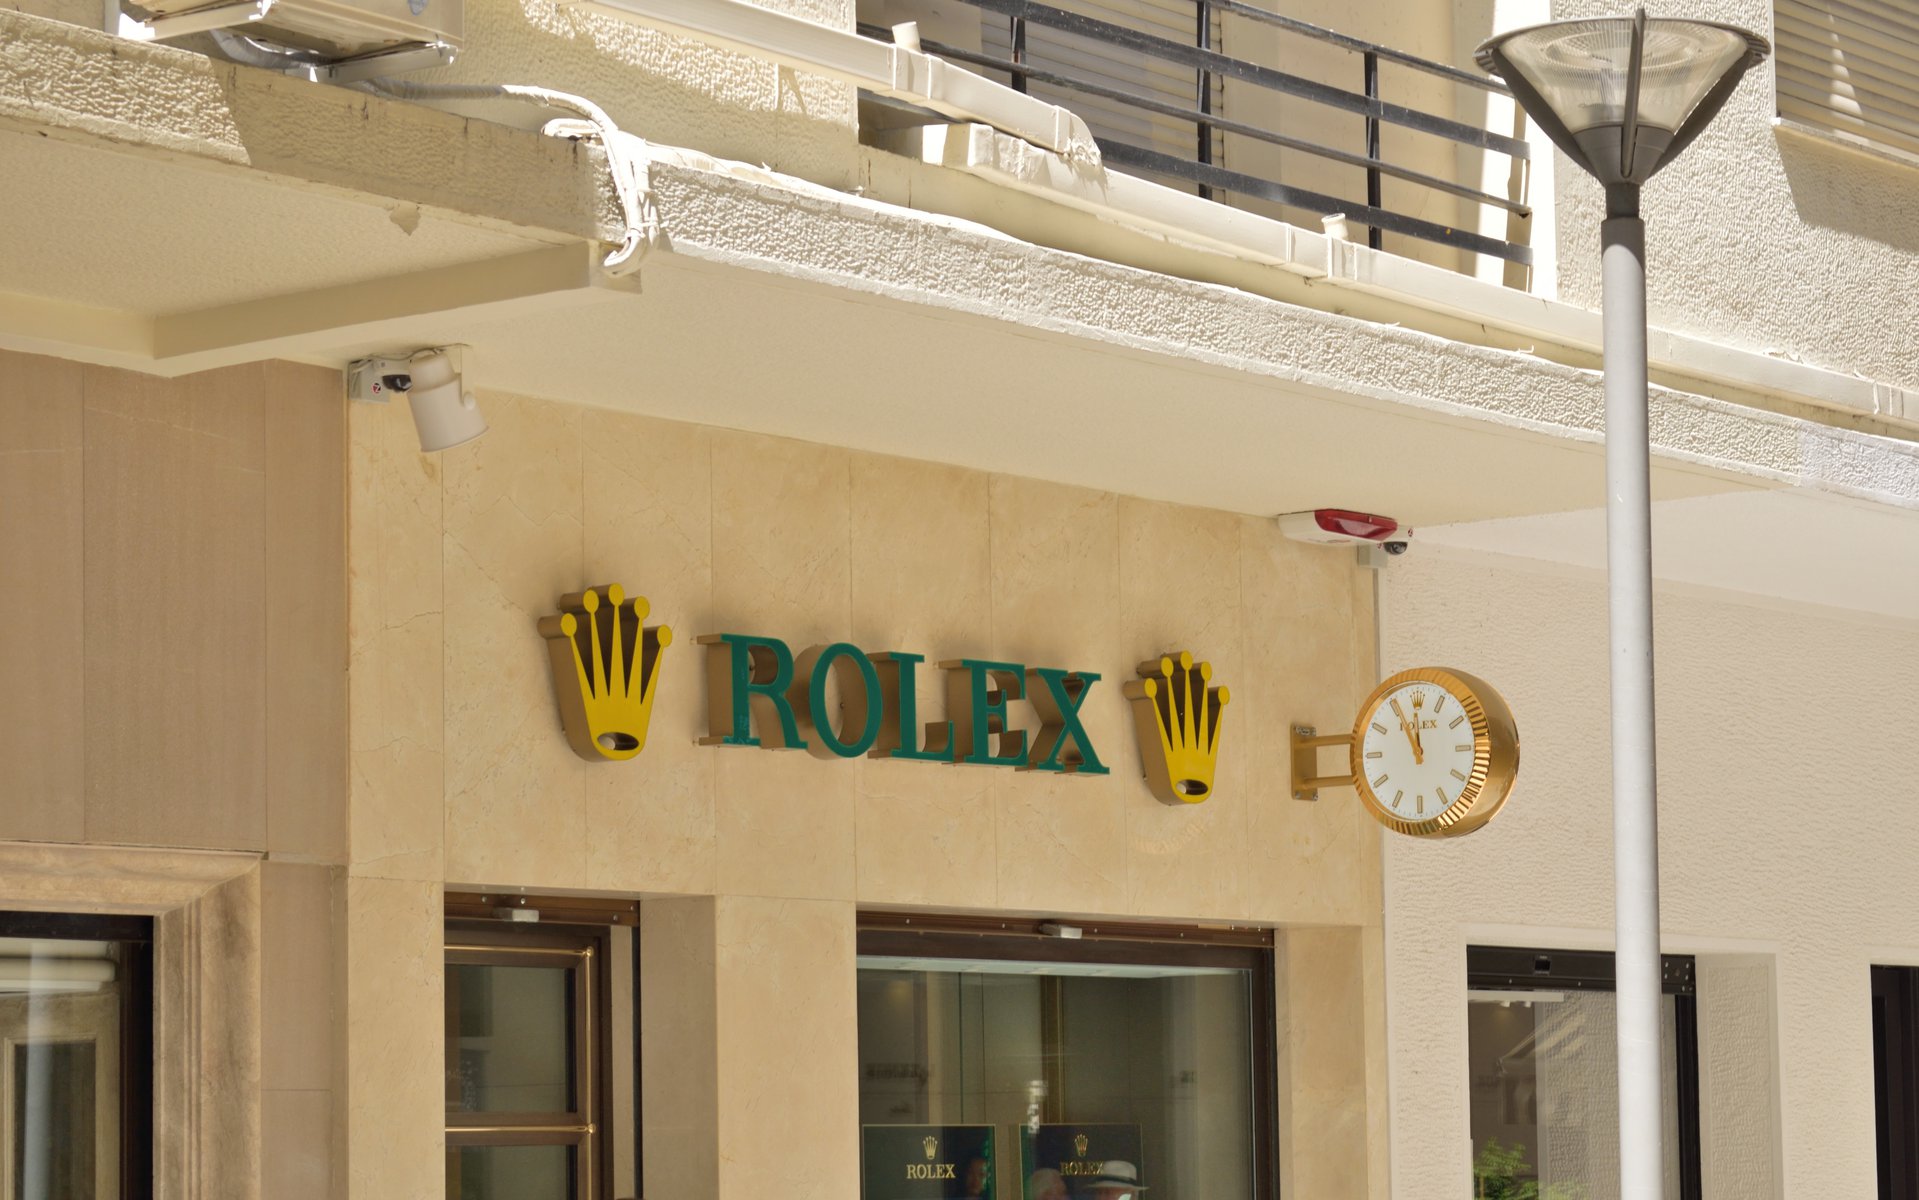 Πρωτοφανής ένοπλη ληστεία στην Rolex στην πλατεία Καρύτση: Τραυματίστηκε ο φύλακας, εκλάπησαν 18 ρολόγια αξίας δεκάδων χιλιάδων ευρώ